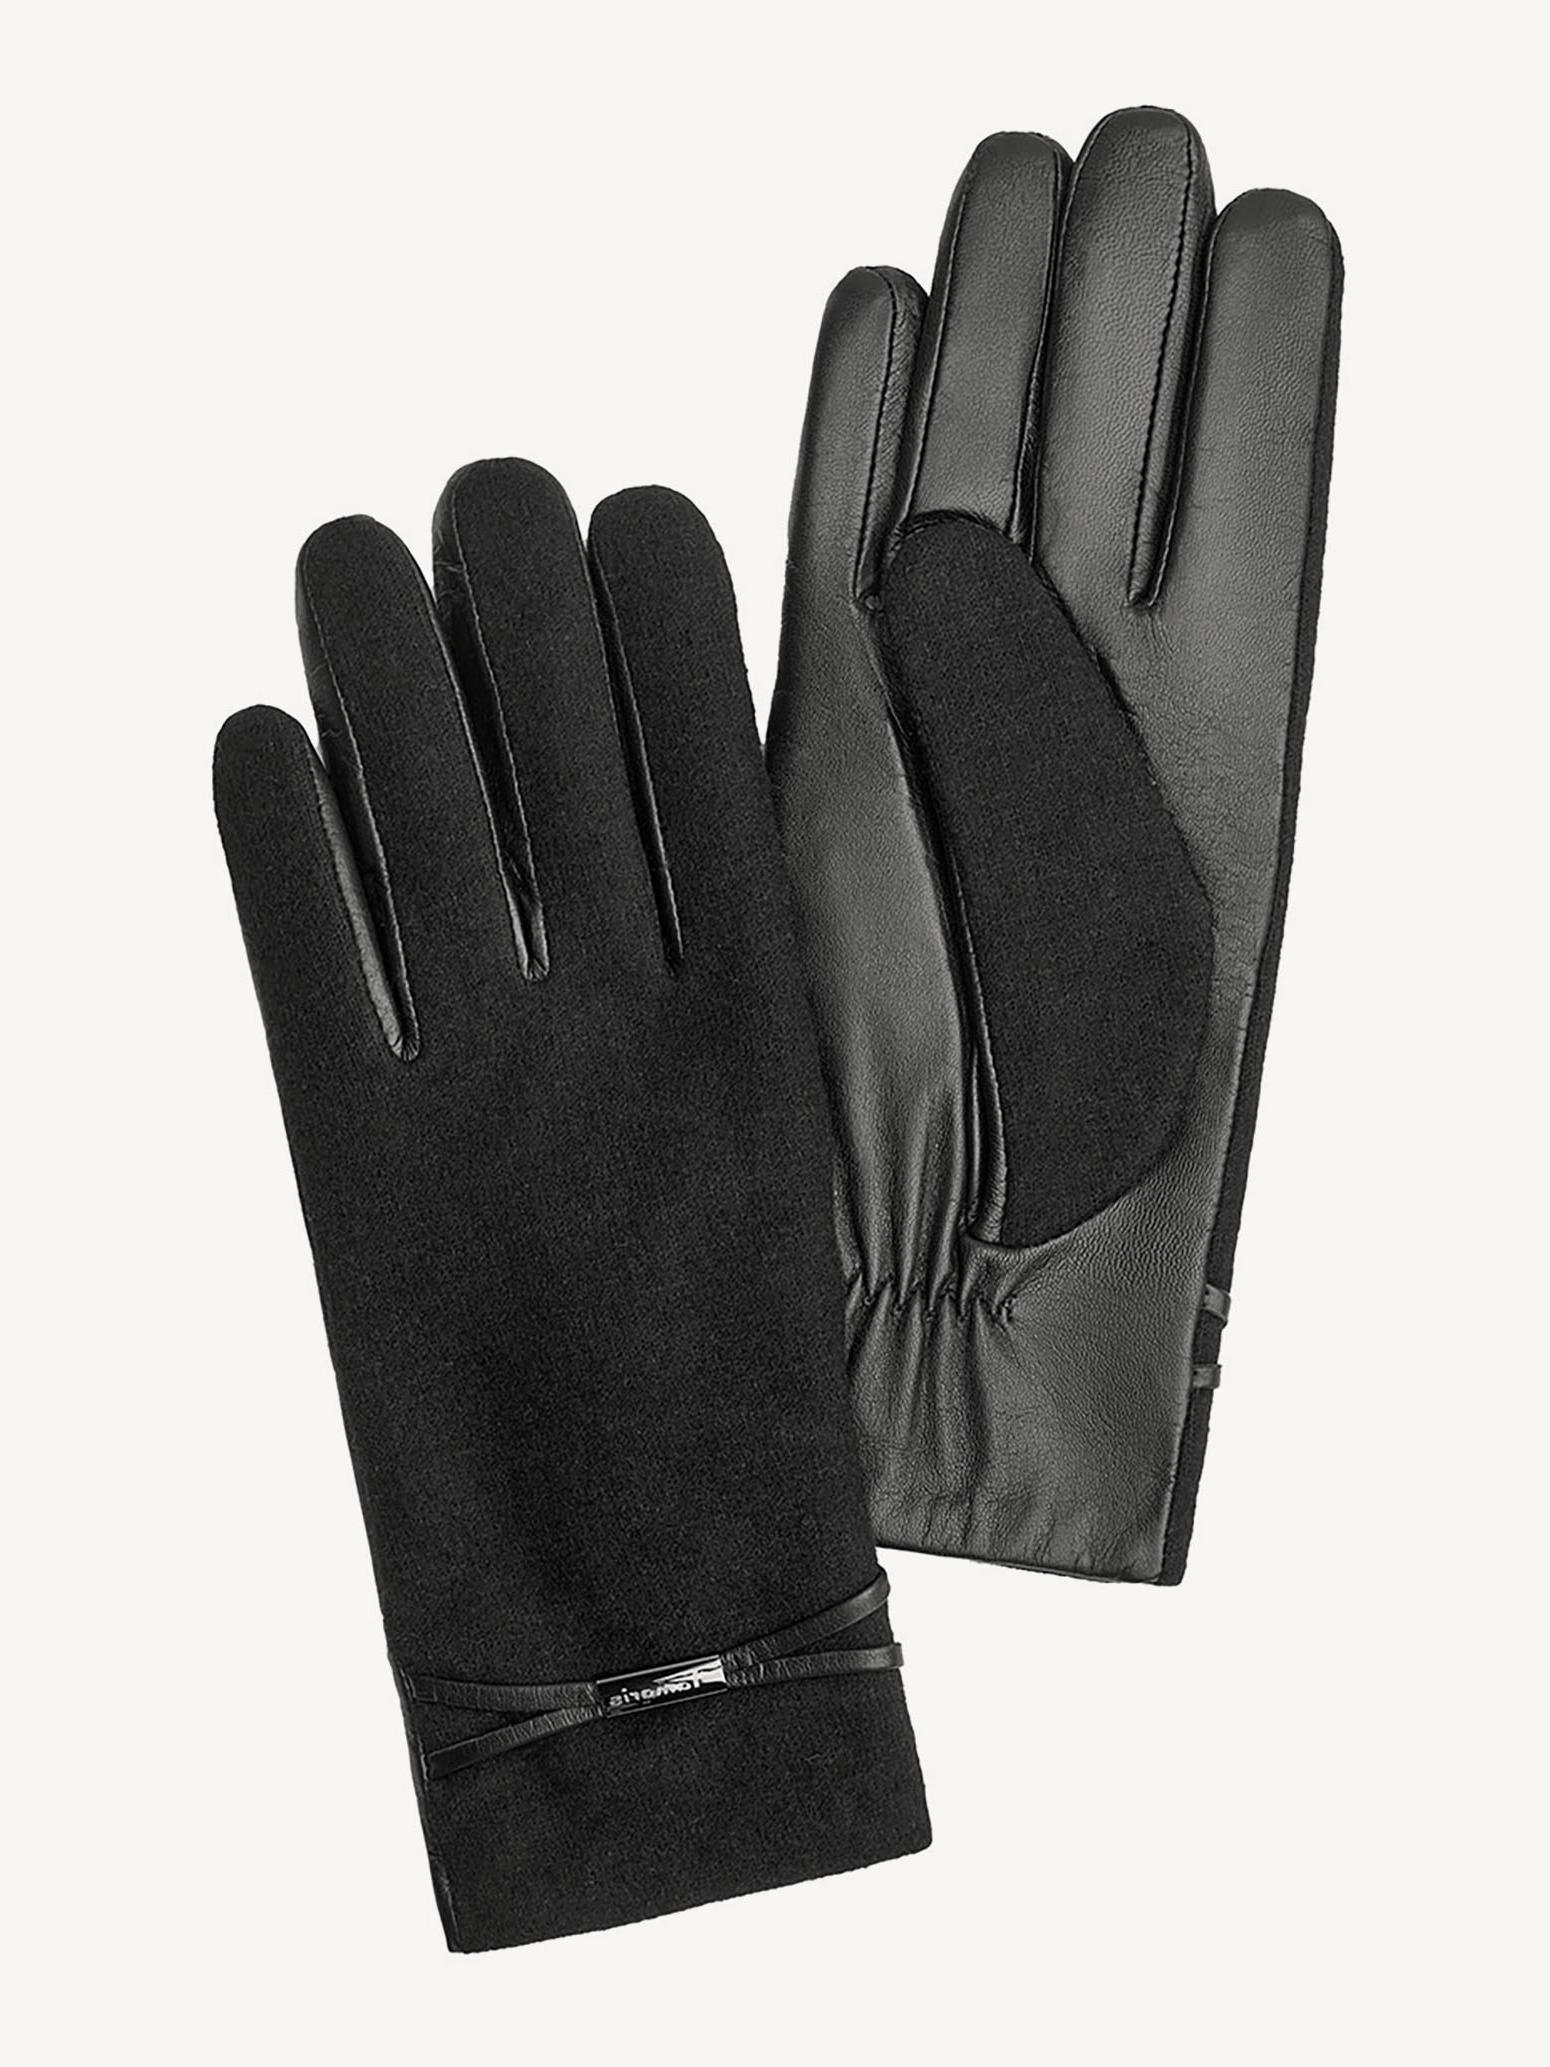 Перчатки женские Tamaris TM-0150-001 черные р. 8